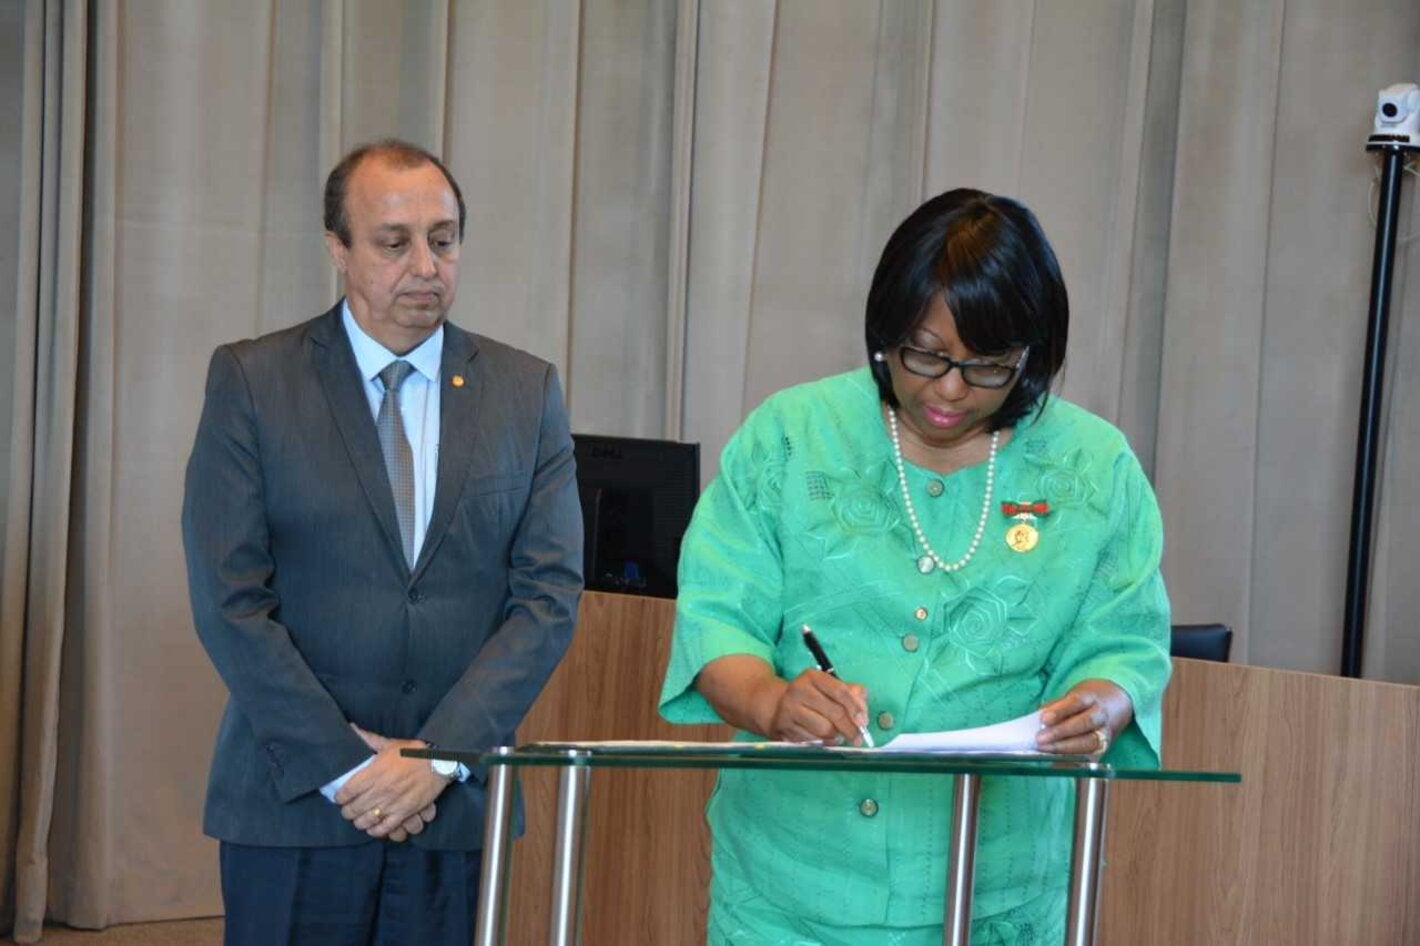 Ministerio de Salud de Brasil, la Secretaría de Salud Pública de Pará y OPS/OMS firmaron este 13 de marzo acuerdos para mejorar la atención básica y la gestión en salud.